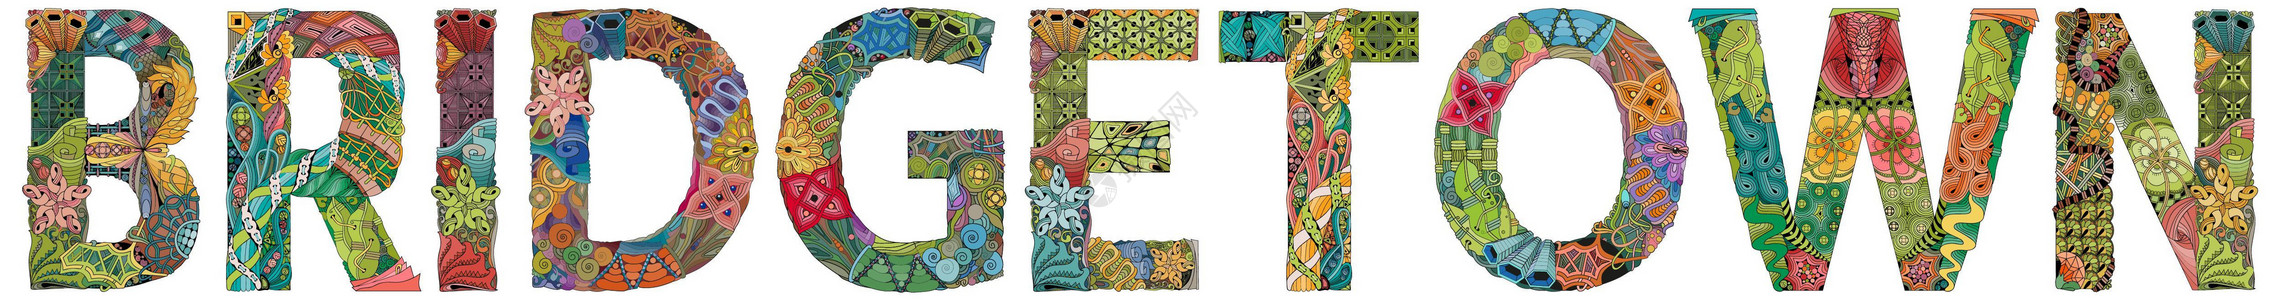 布里奇敦市是巴巴多斯的首都 用于装饰的矢量装饰 zentangle 对象插画